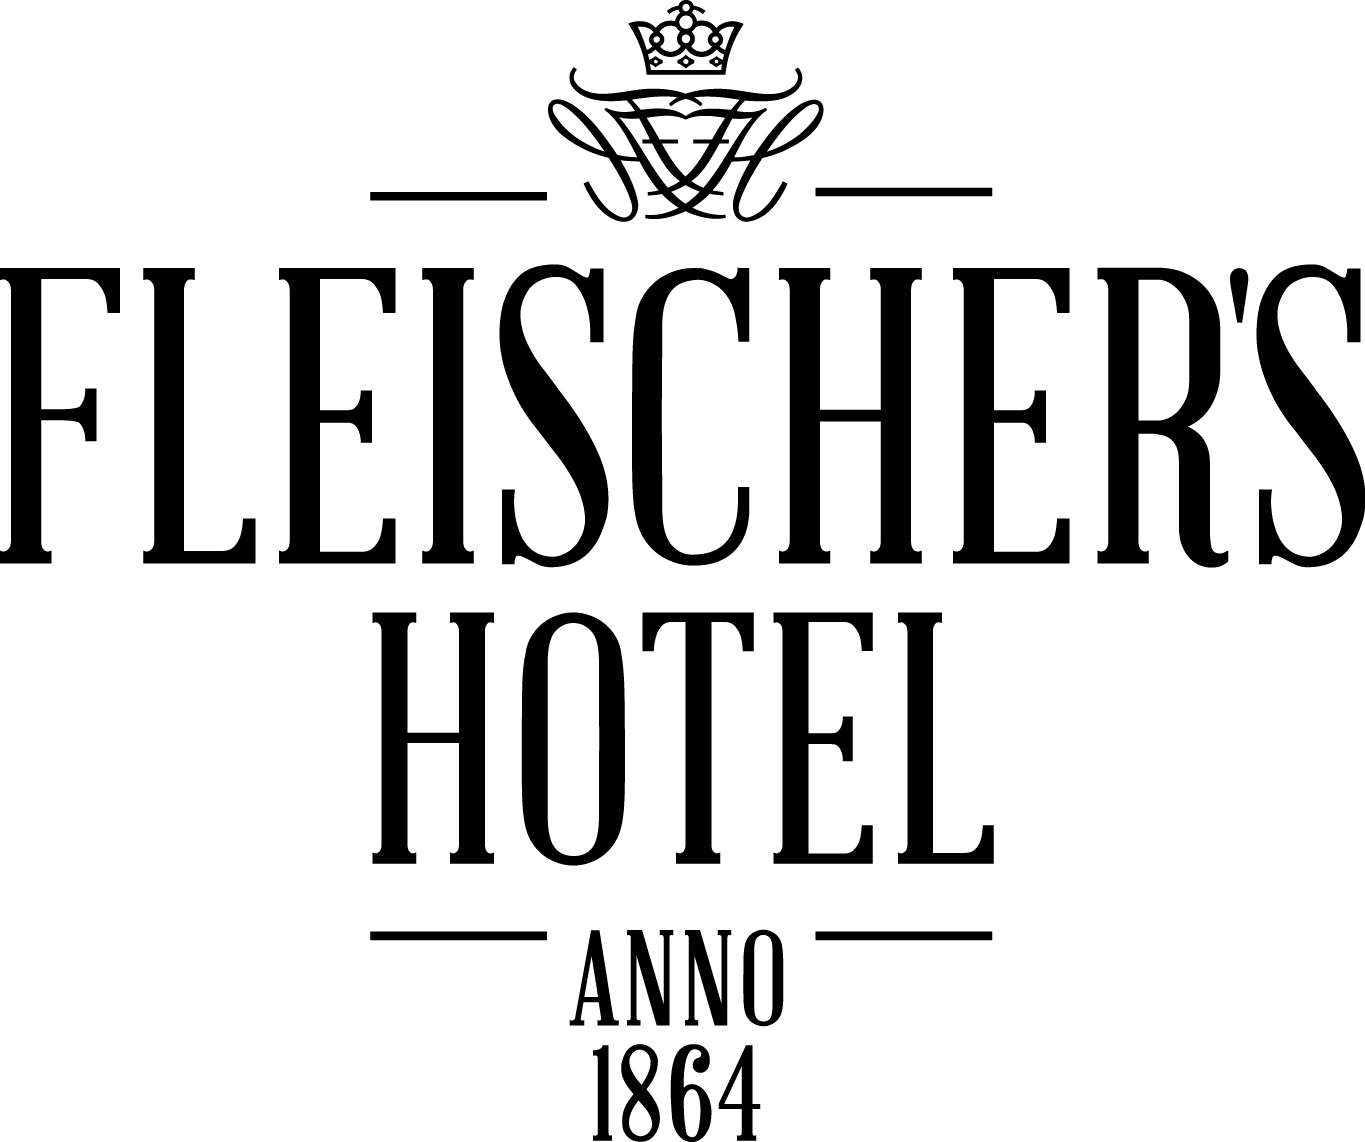 Fleischers_logo